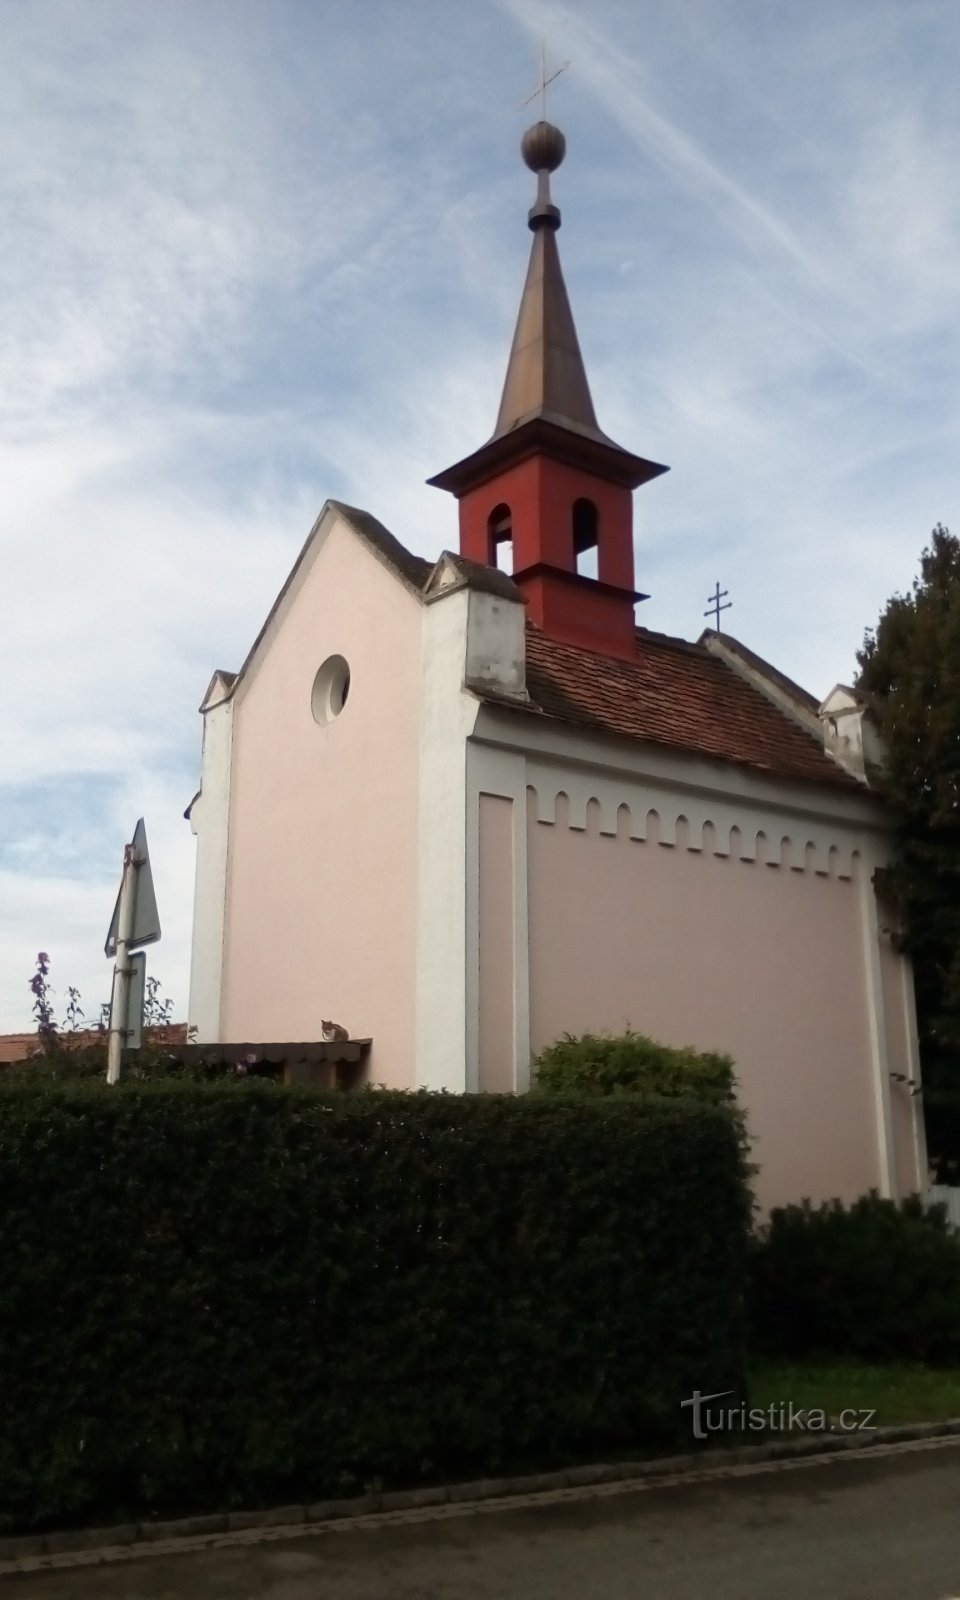 Capela Sf. Václav în Mnětice